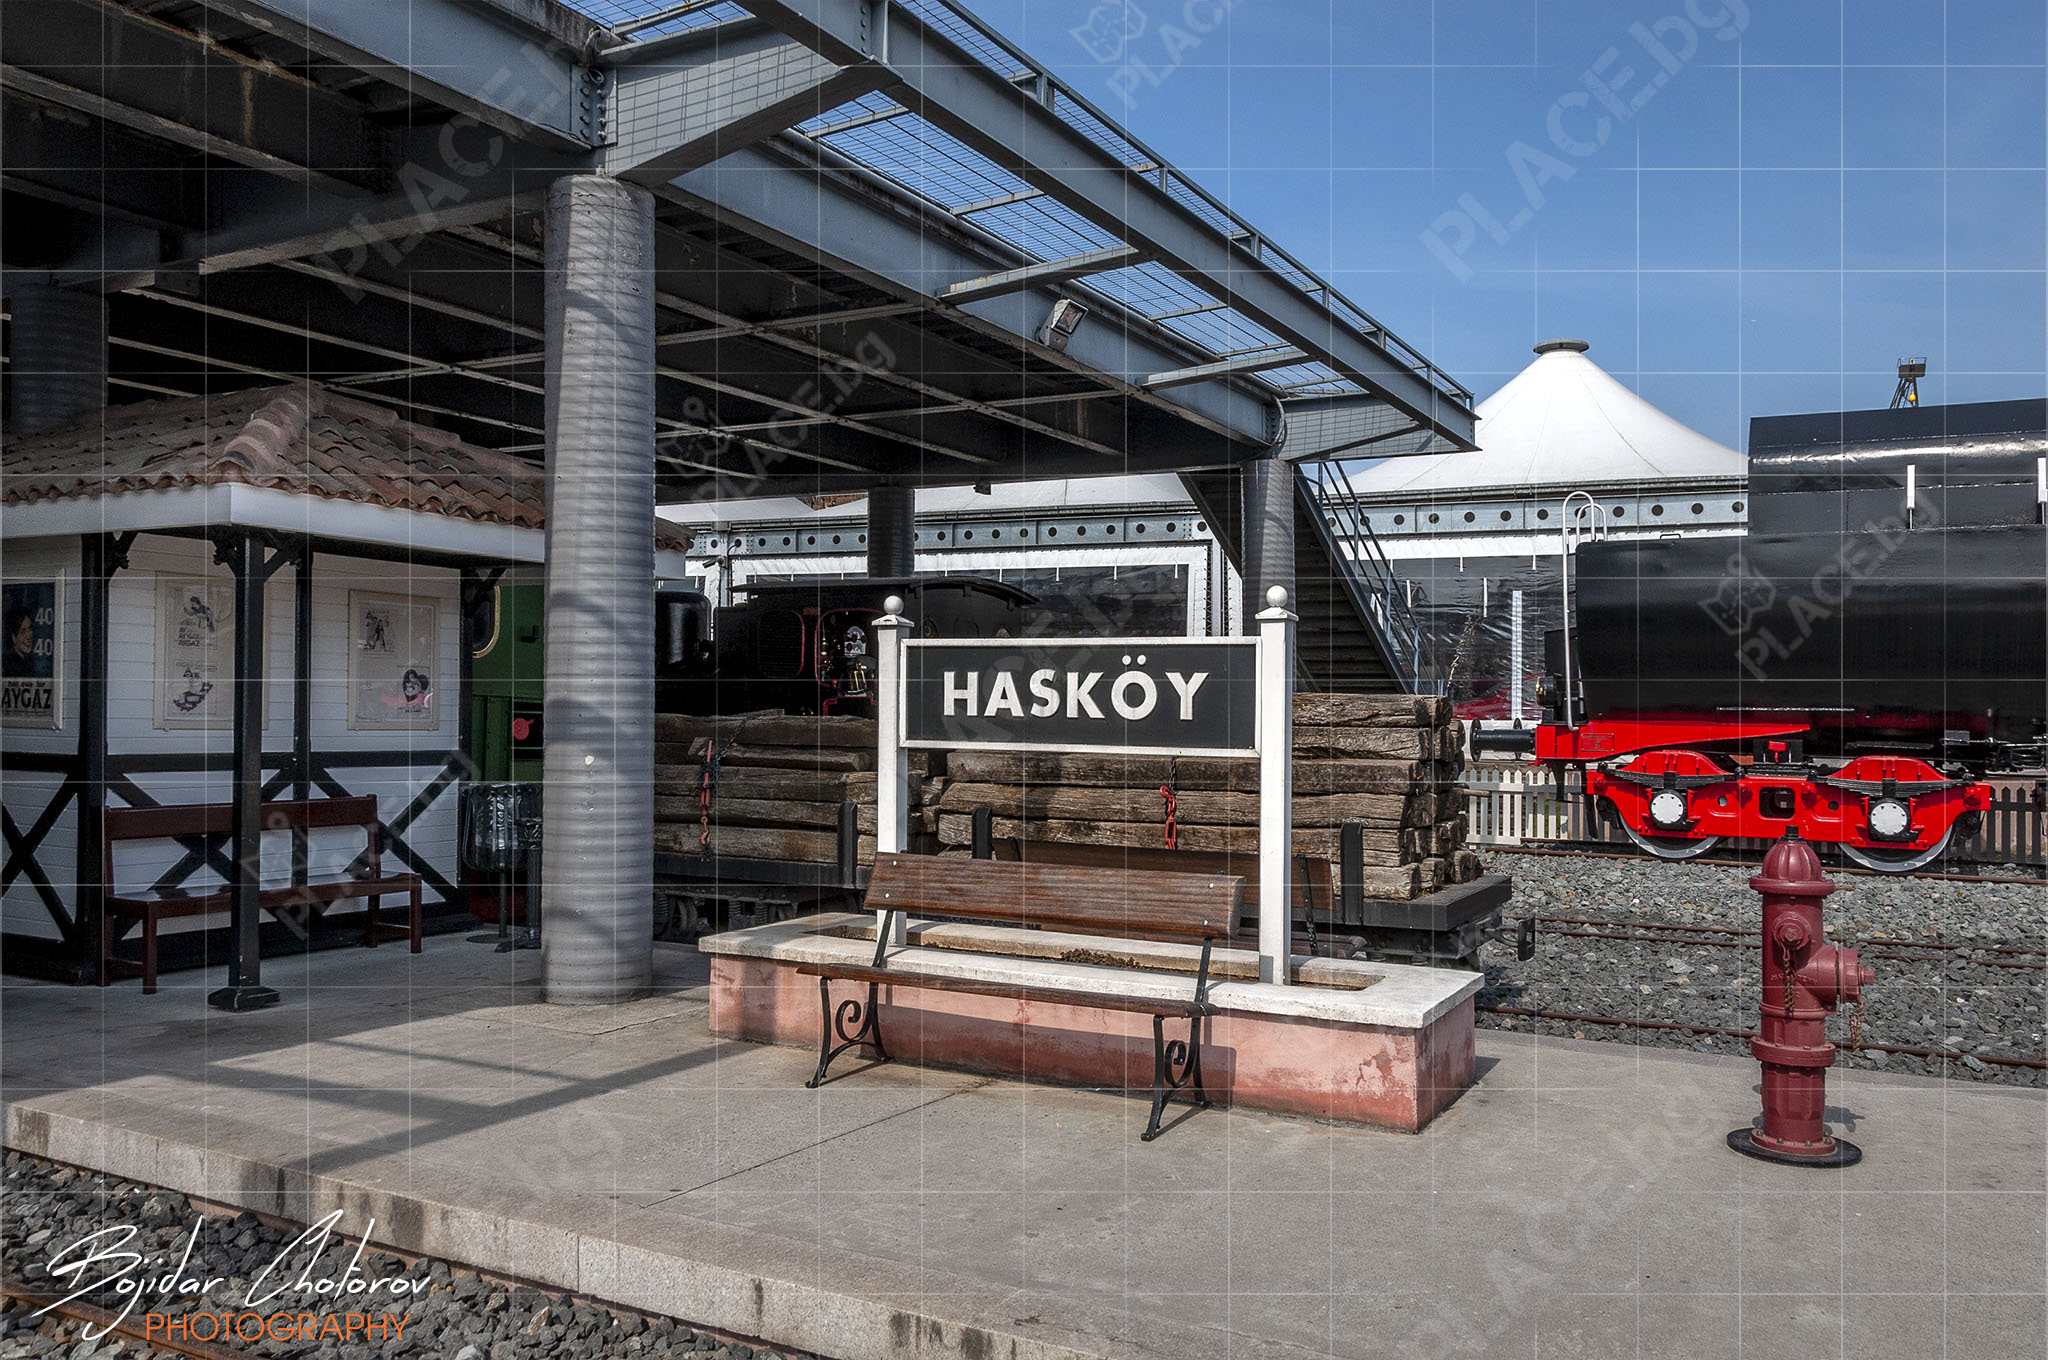 Реставрираната ЖП гара Hasköy в рамките на музея (DSC8516)